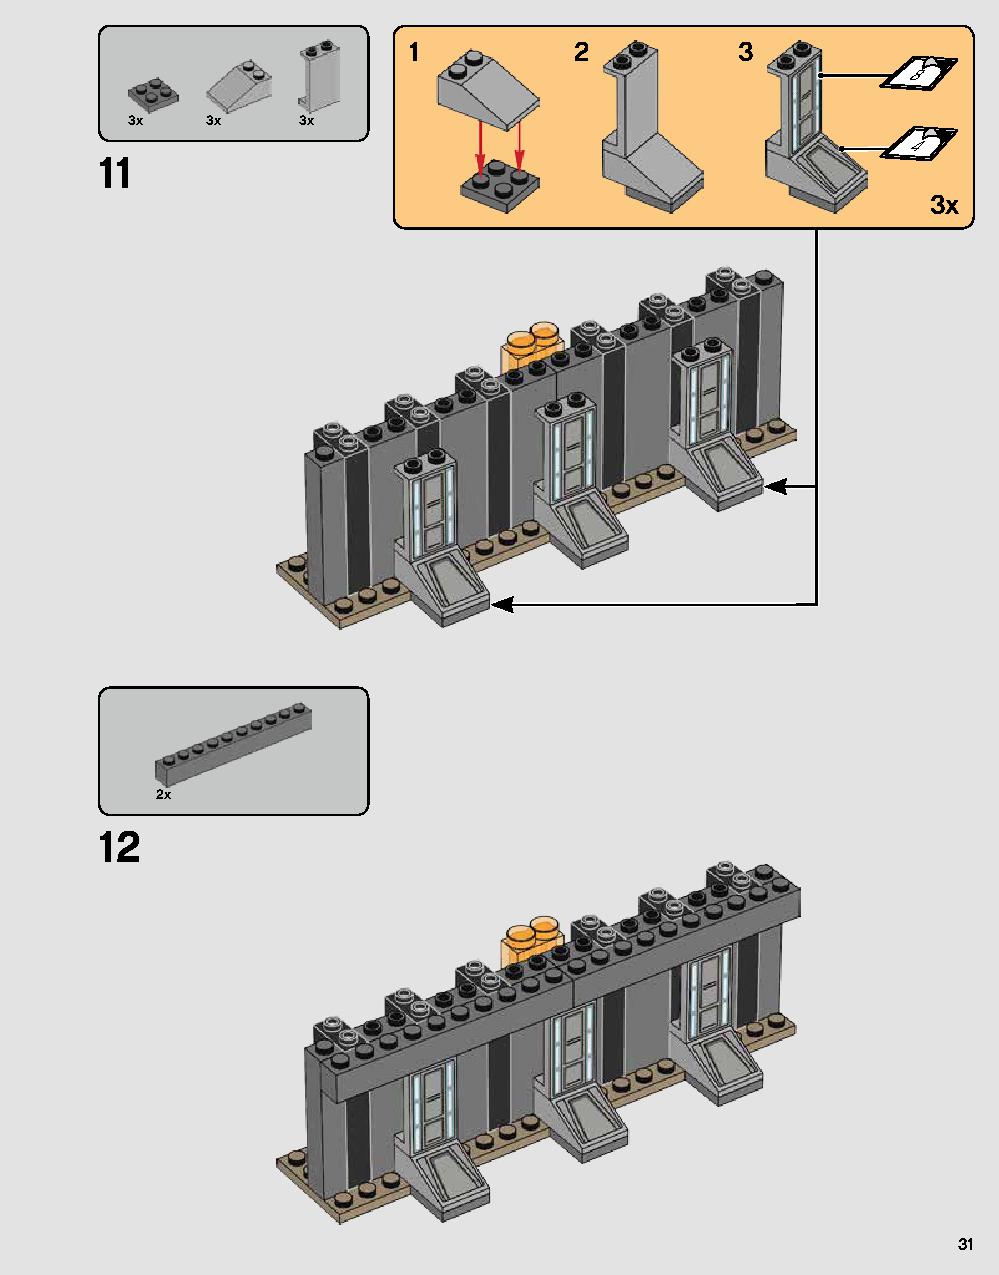 ダース・ベイダーの城 75251 レゴの商品情報 レゴの説明書・組立方法 31 page